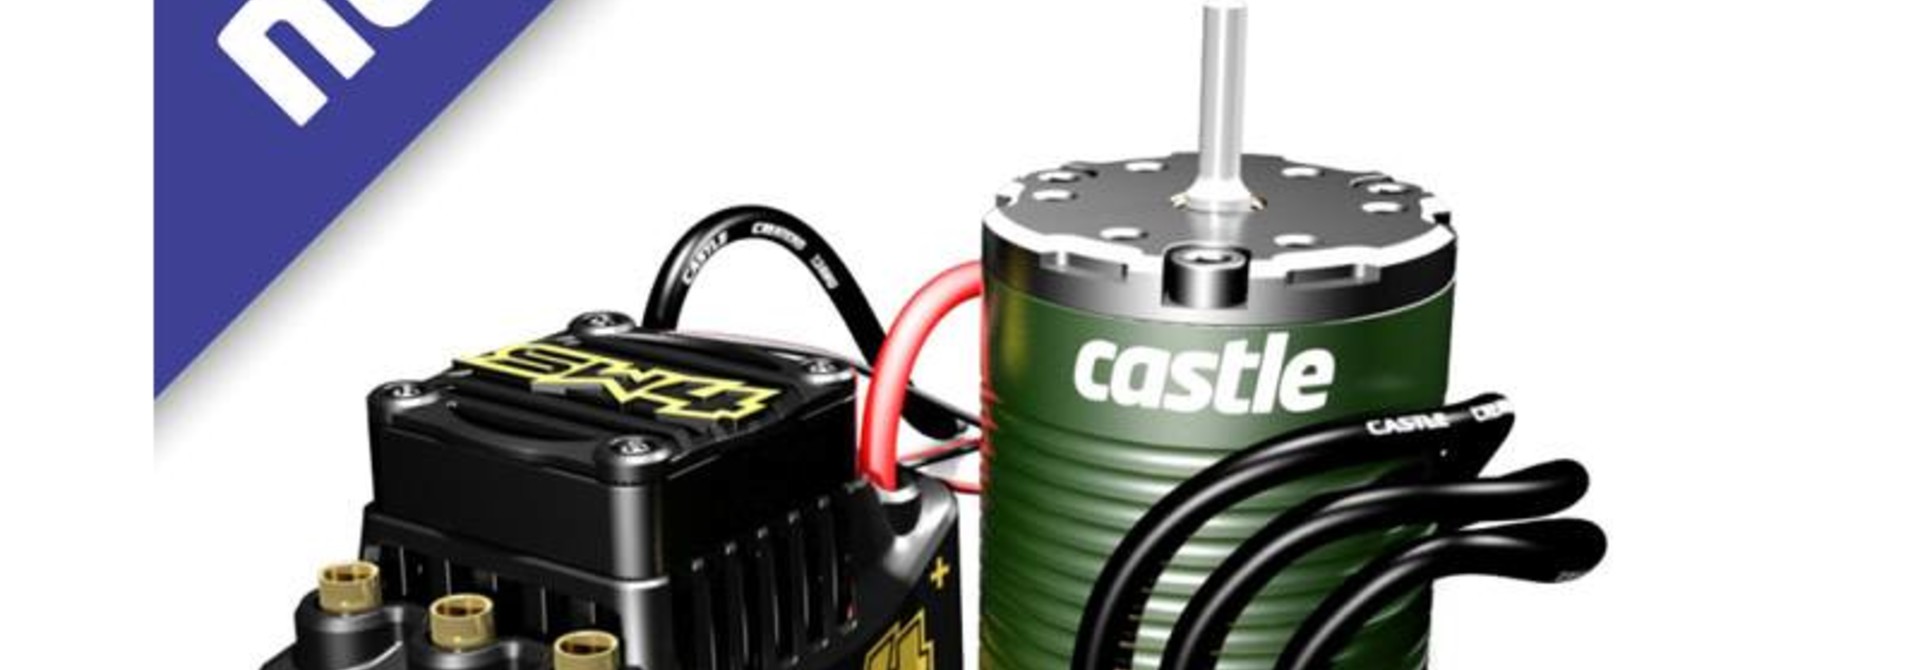 Castle - Sidewinder SW4, 12.6V, 2A BEC, WP Sensorless ESC W/1410-3800 Sensored motor